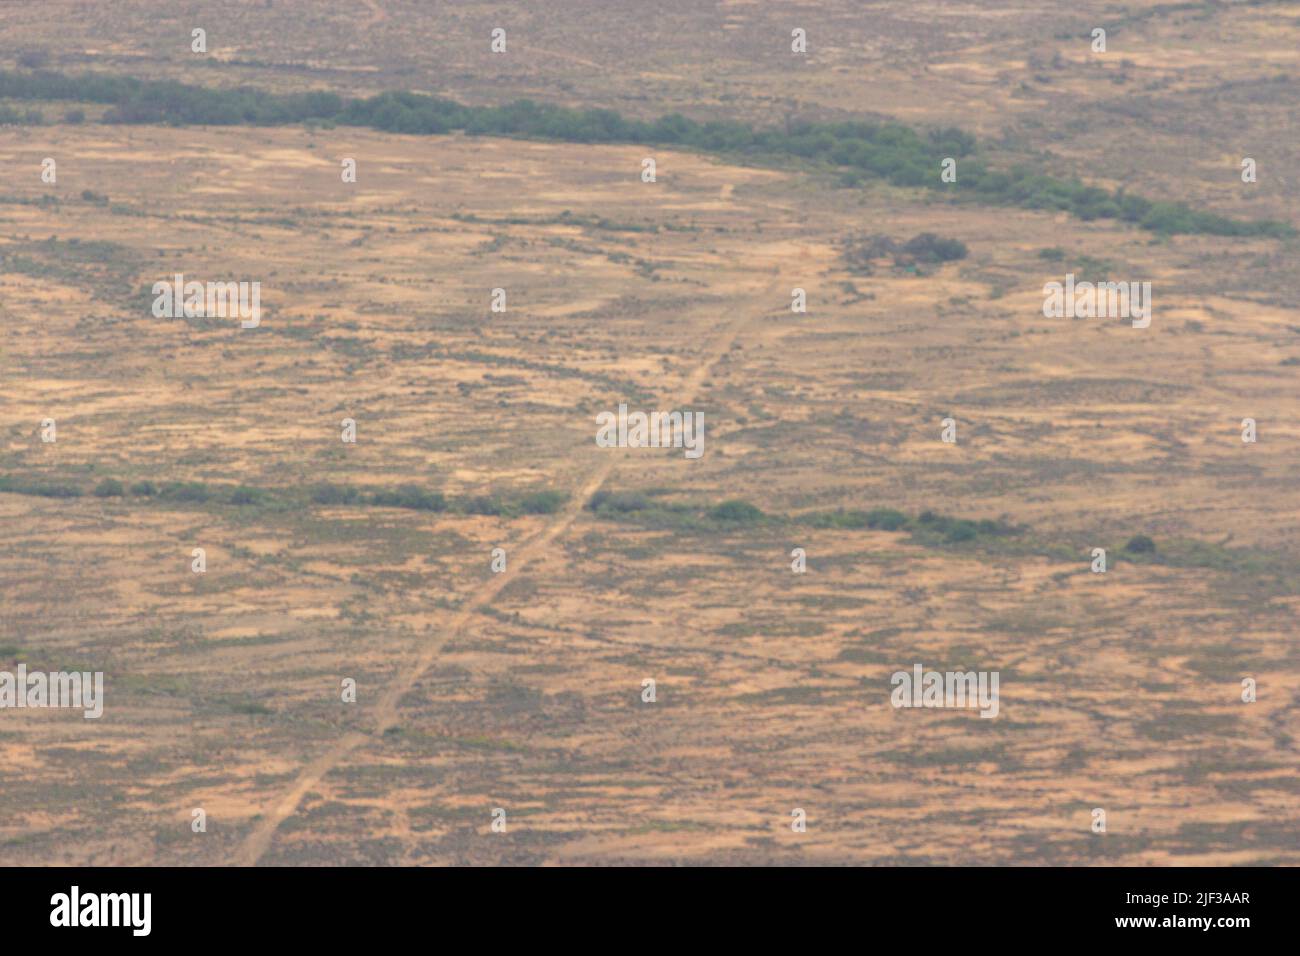 Desierto: La forma Knersvlakte arriba en septiembre tomada del paso de VanRhyn cerca de Nieuwoudtville, Cabo Norte de Sudáfrica Foto de stock